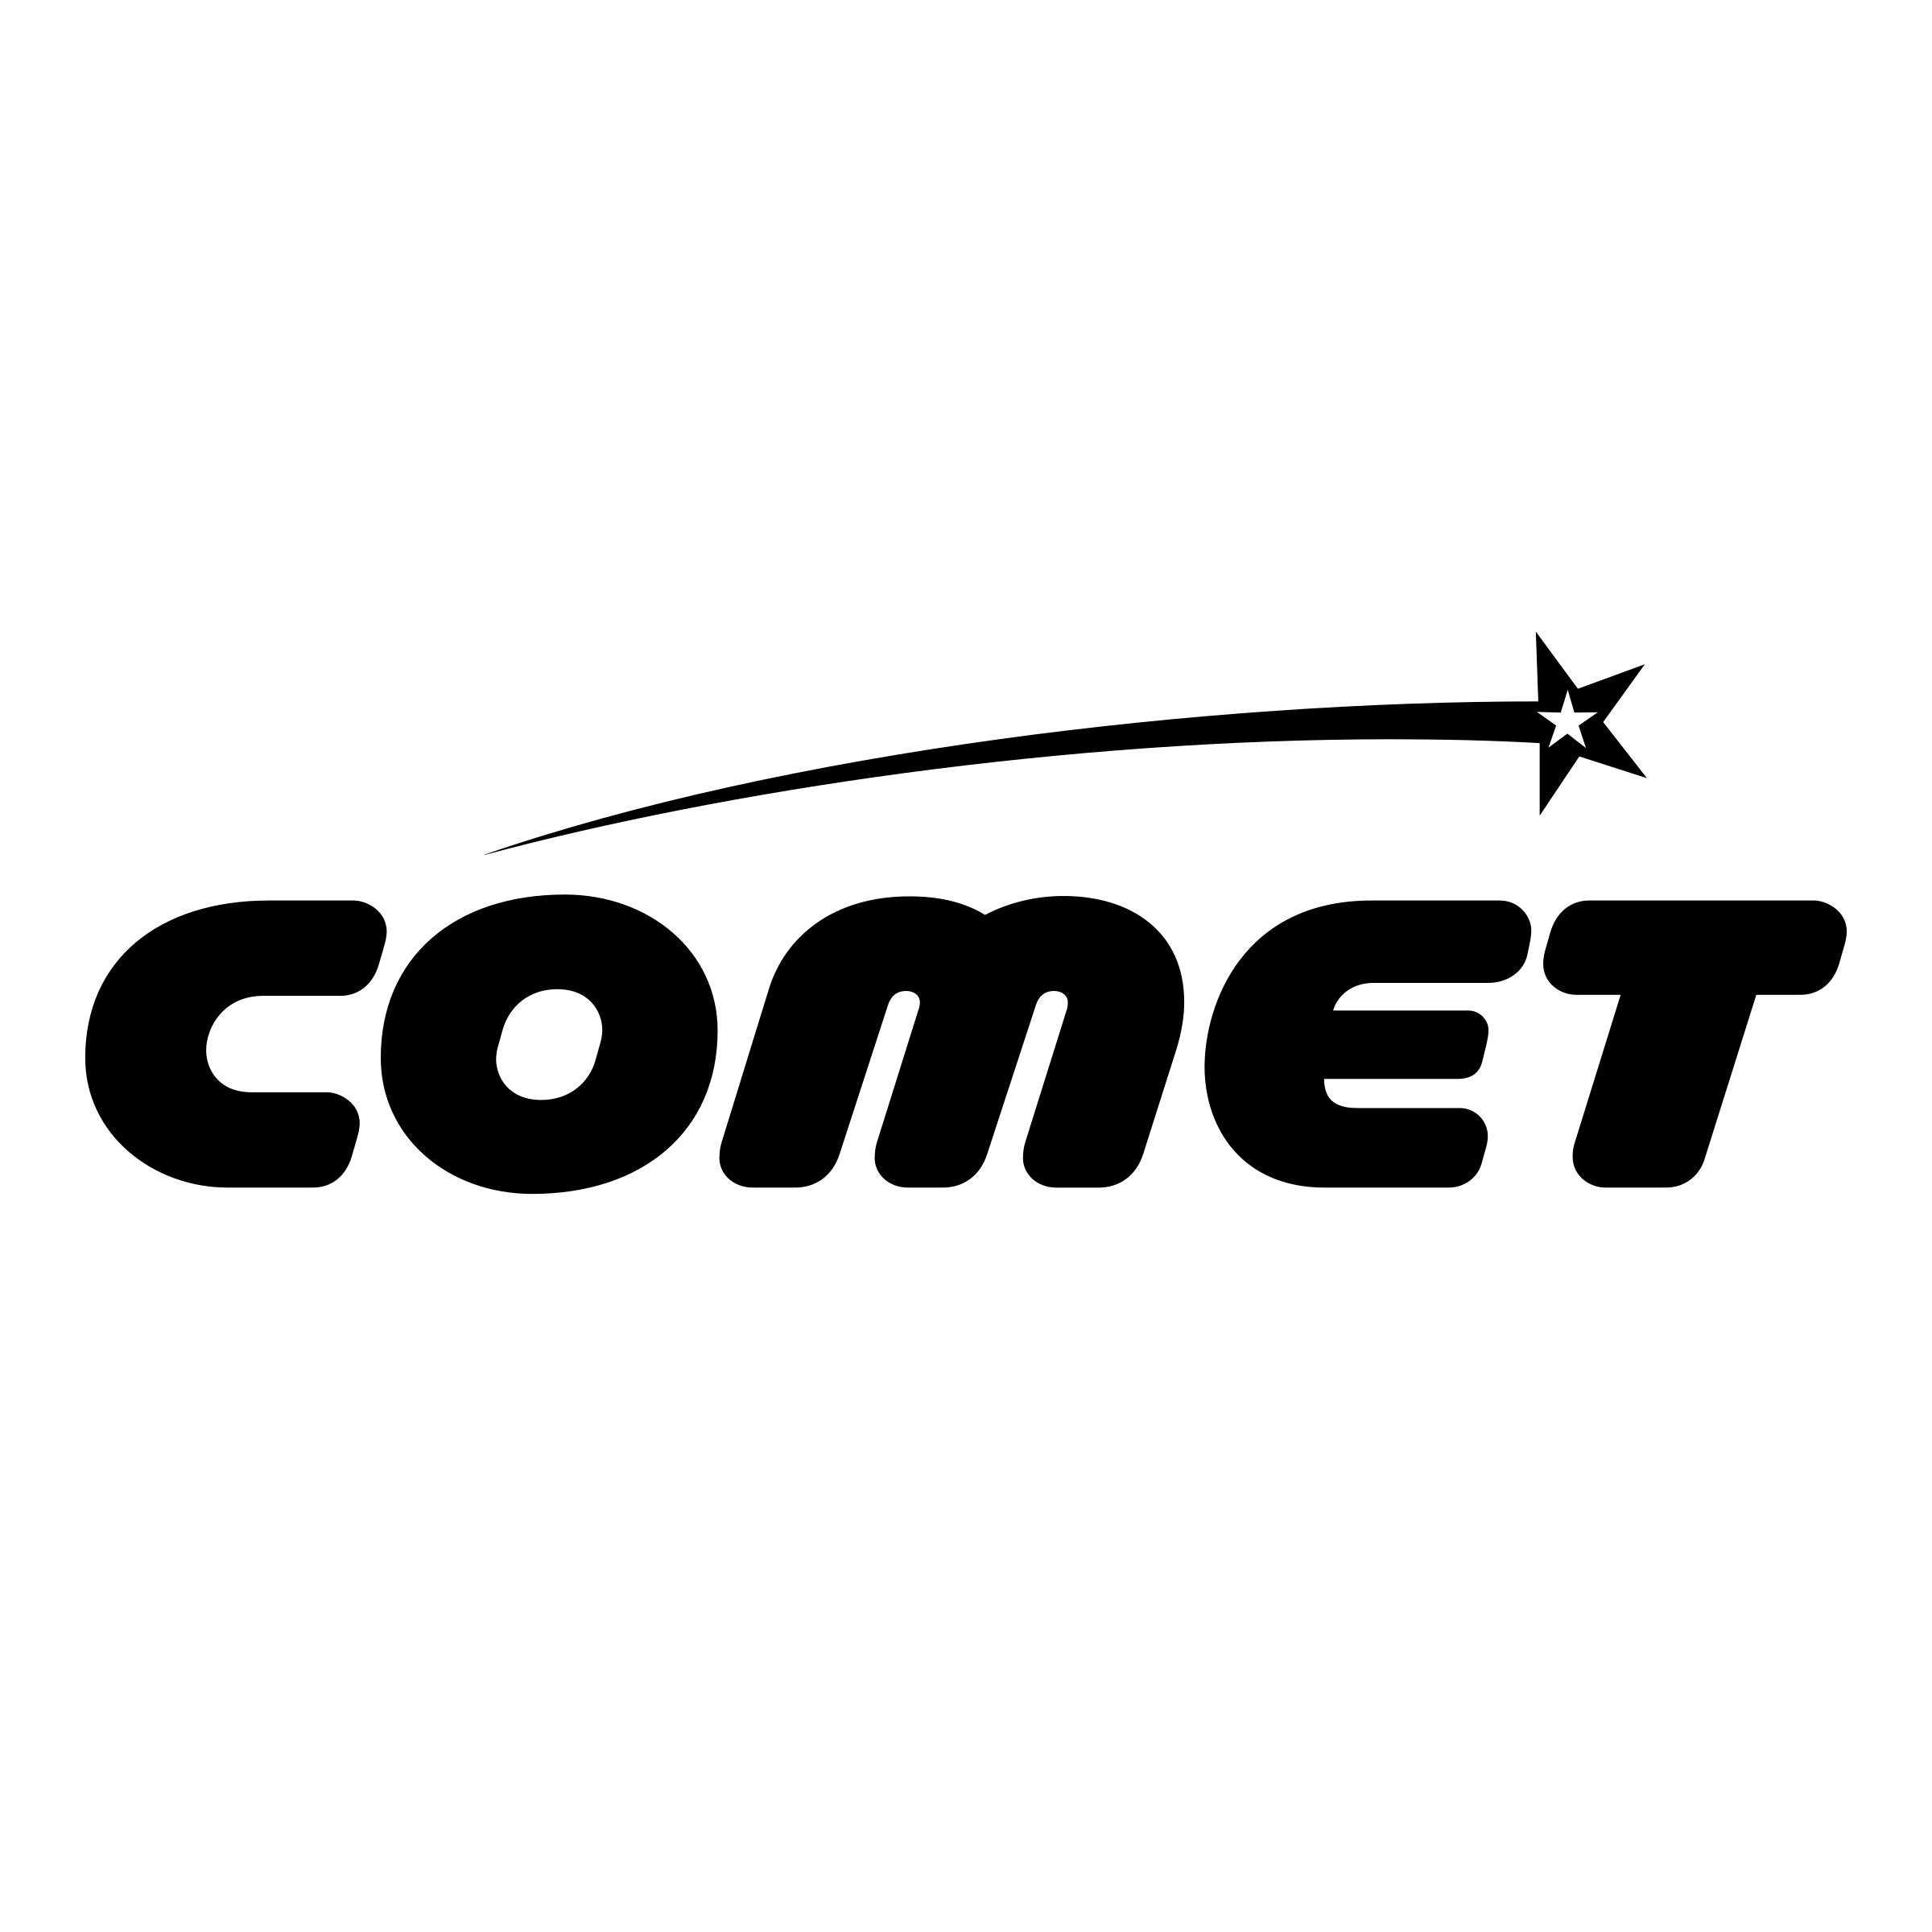 Comet Logo - Comet Logo PNG Transparent & SVG Vector - Freebie Supply